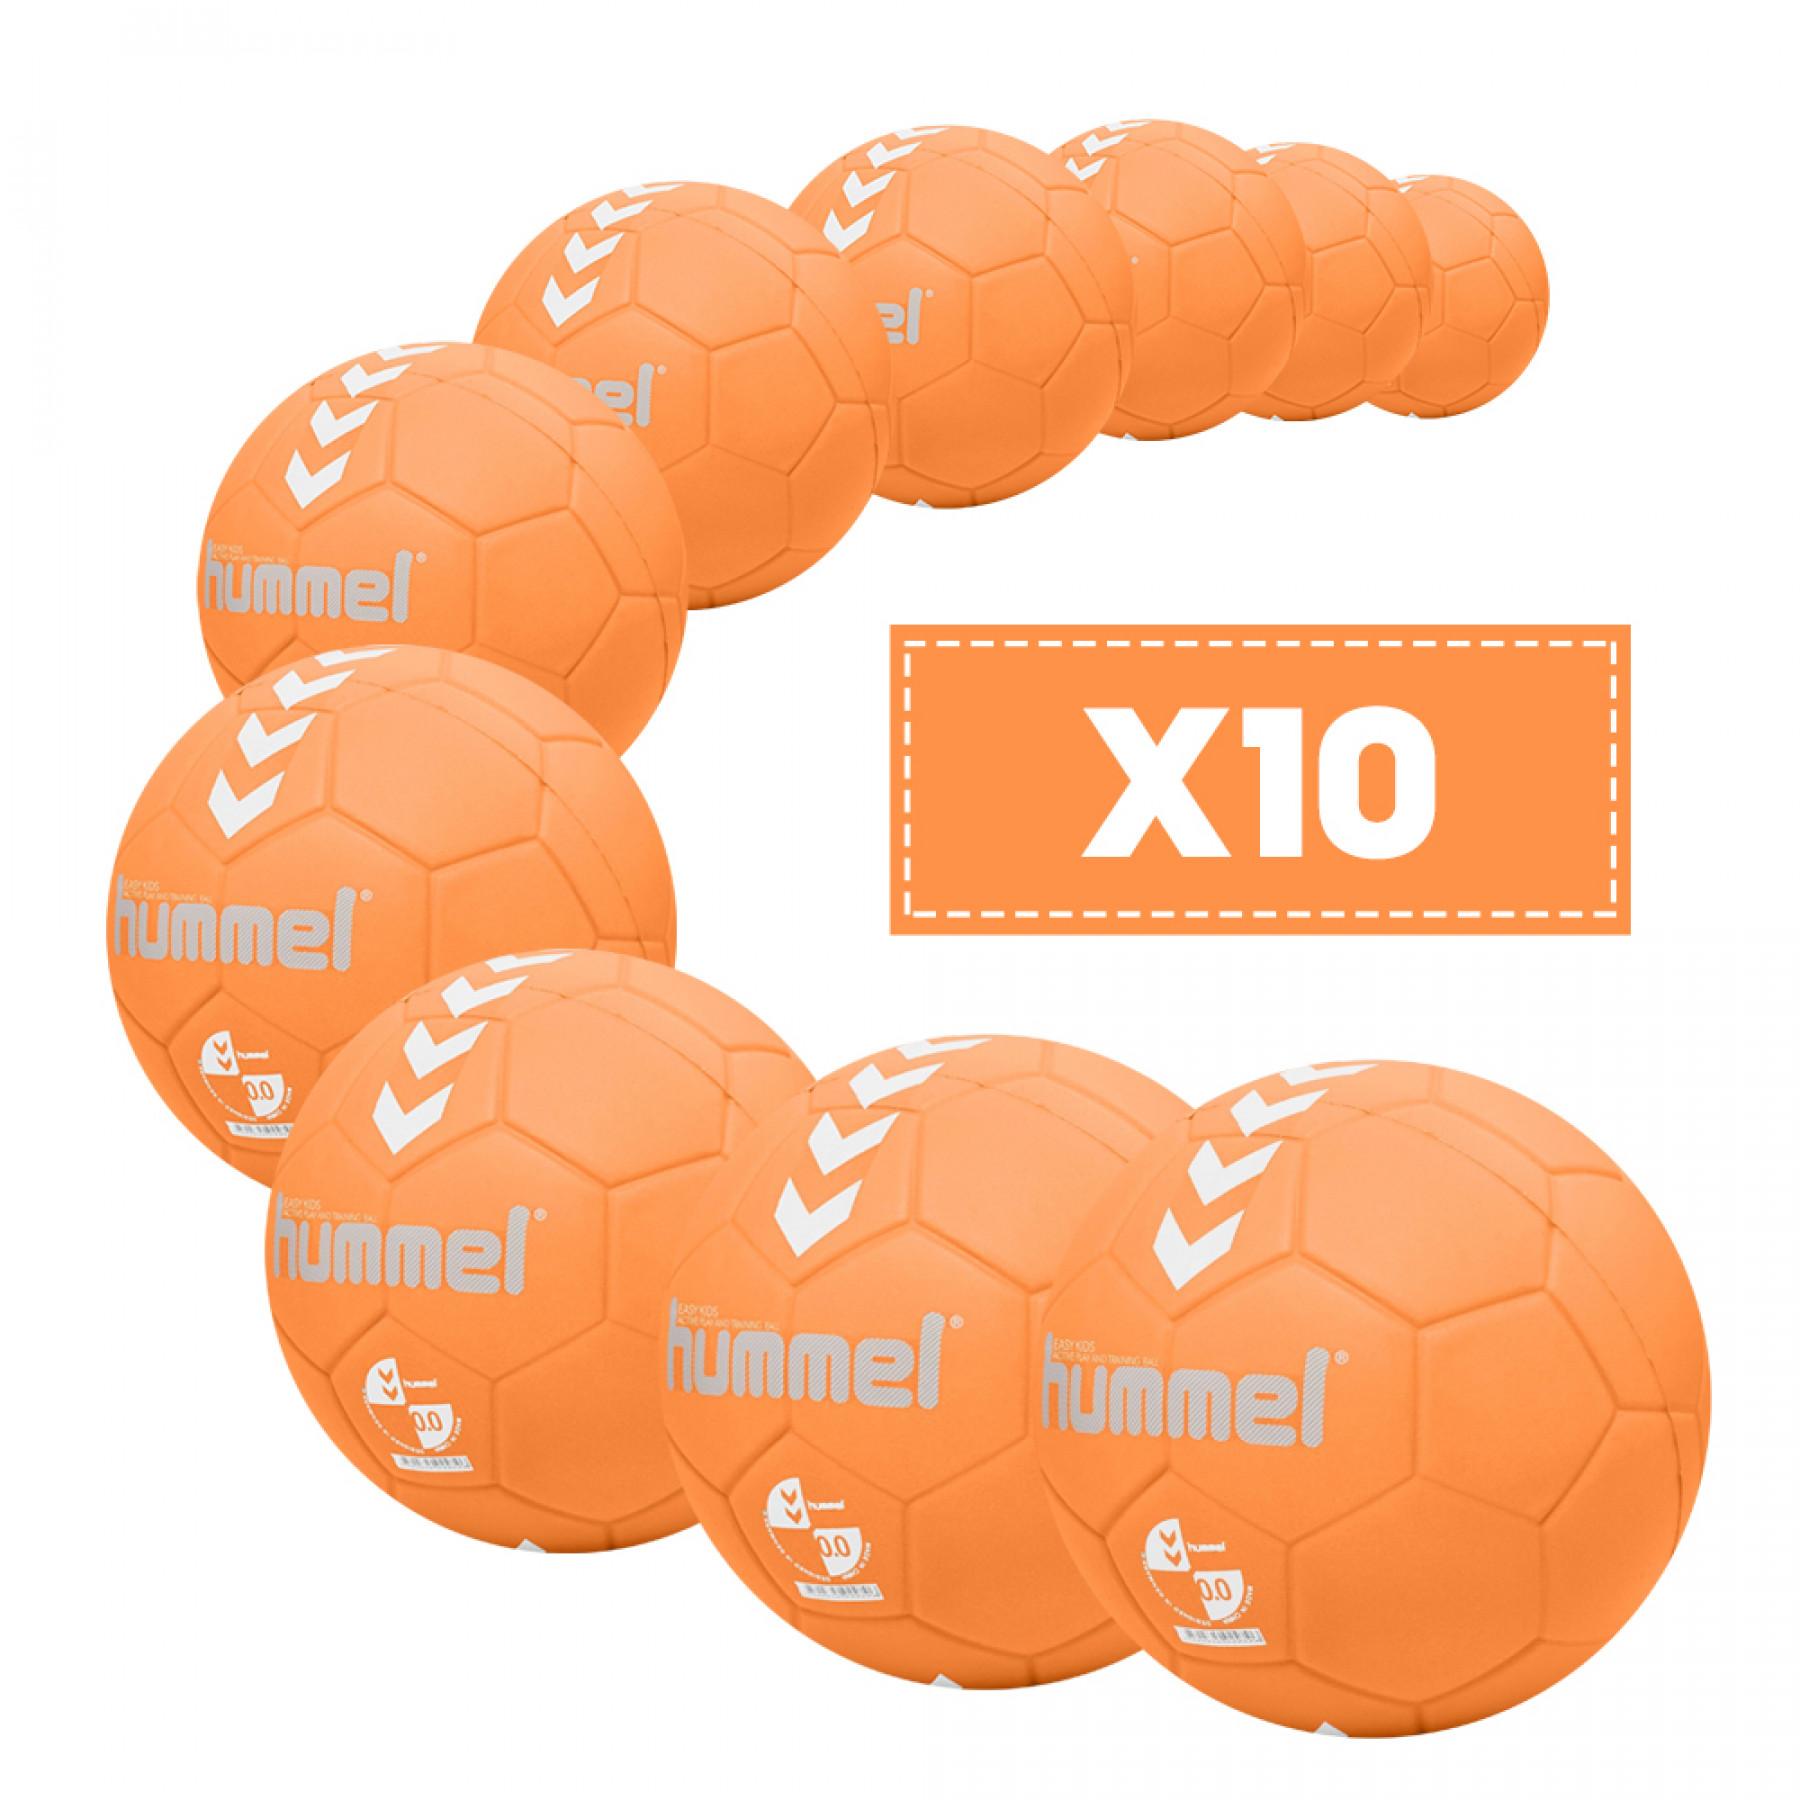 Pacote de 10 balões para crianças Hummel Easy Kids PVC